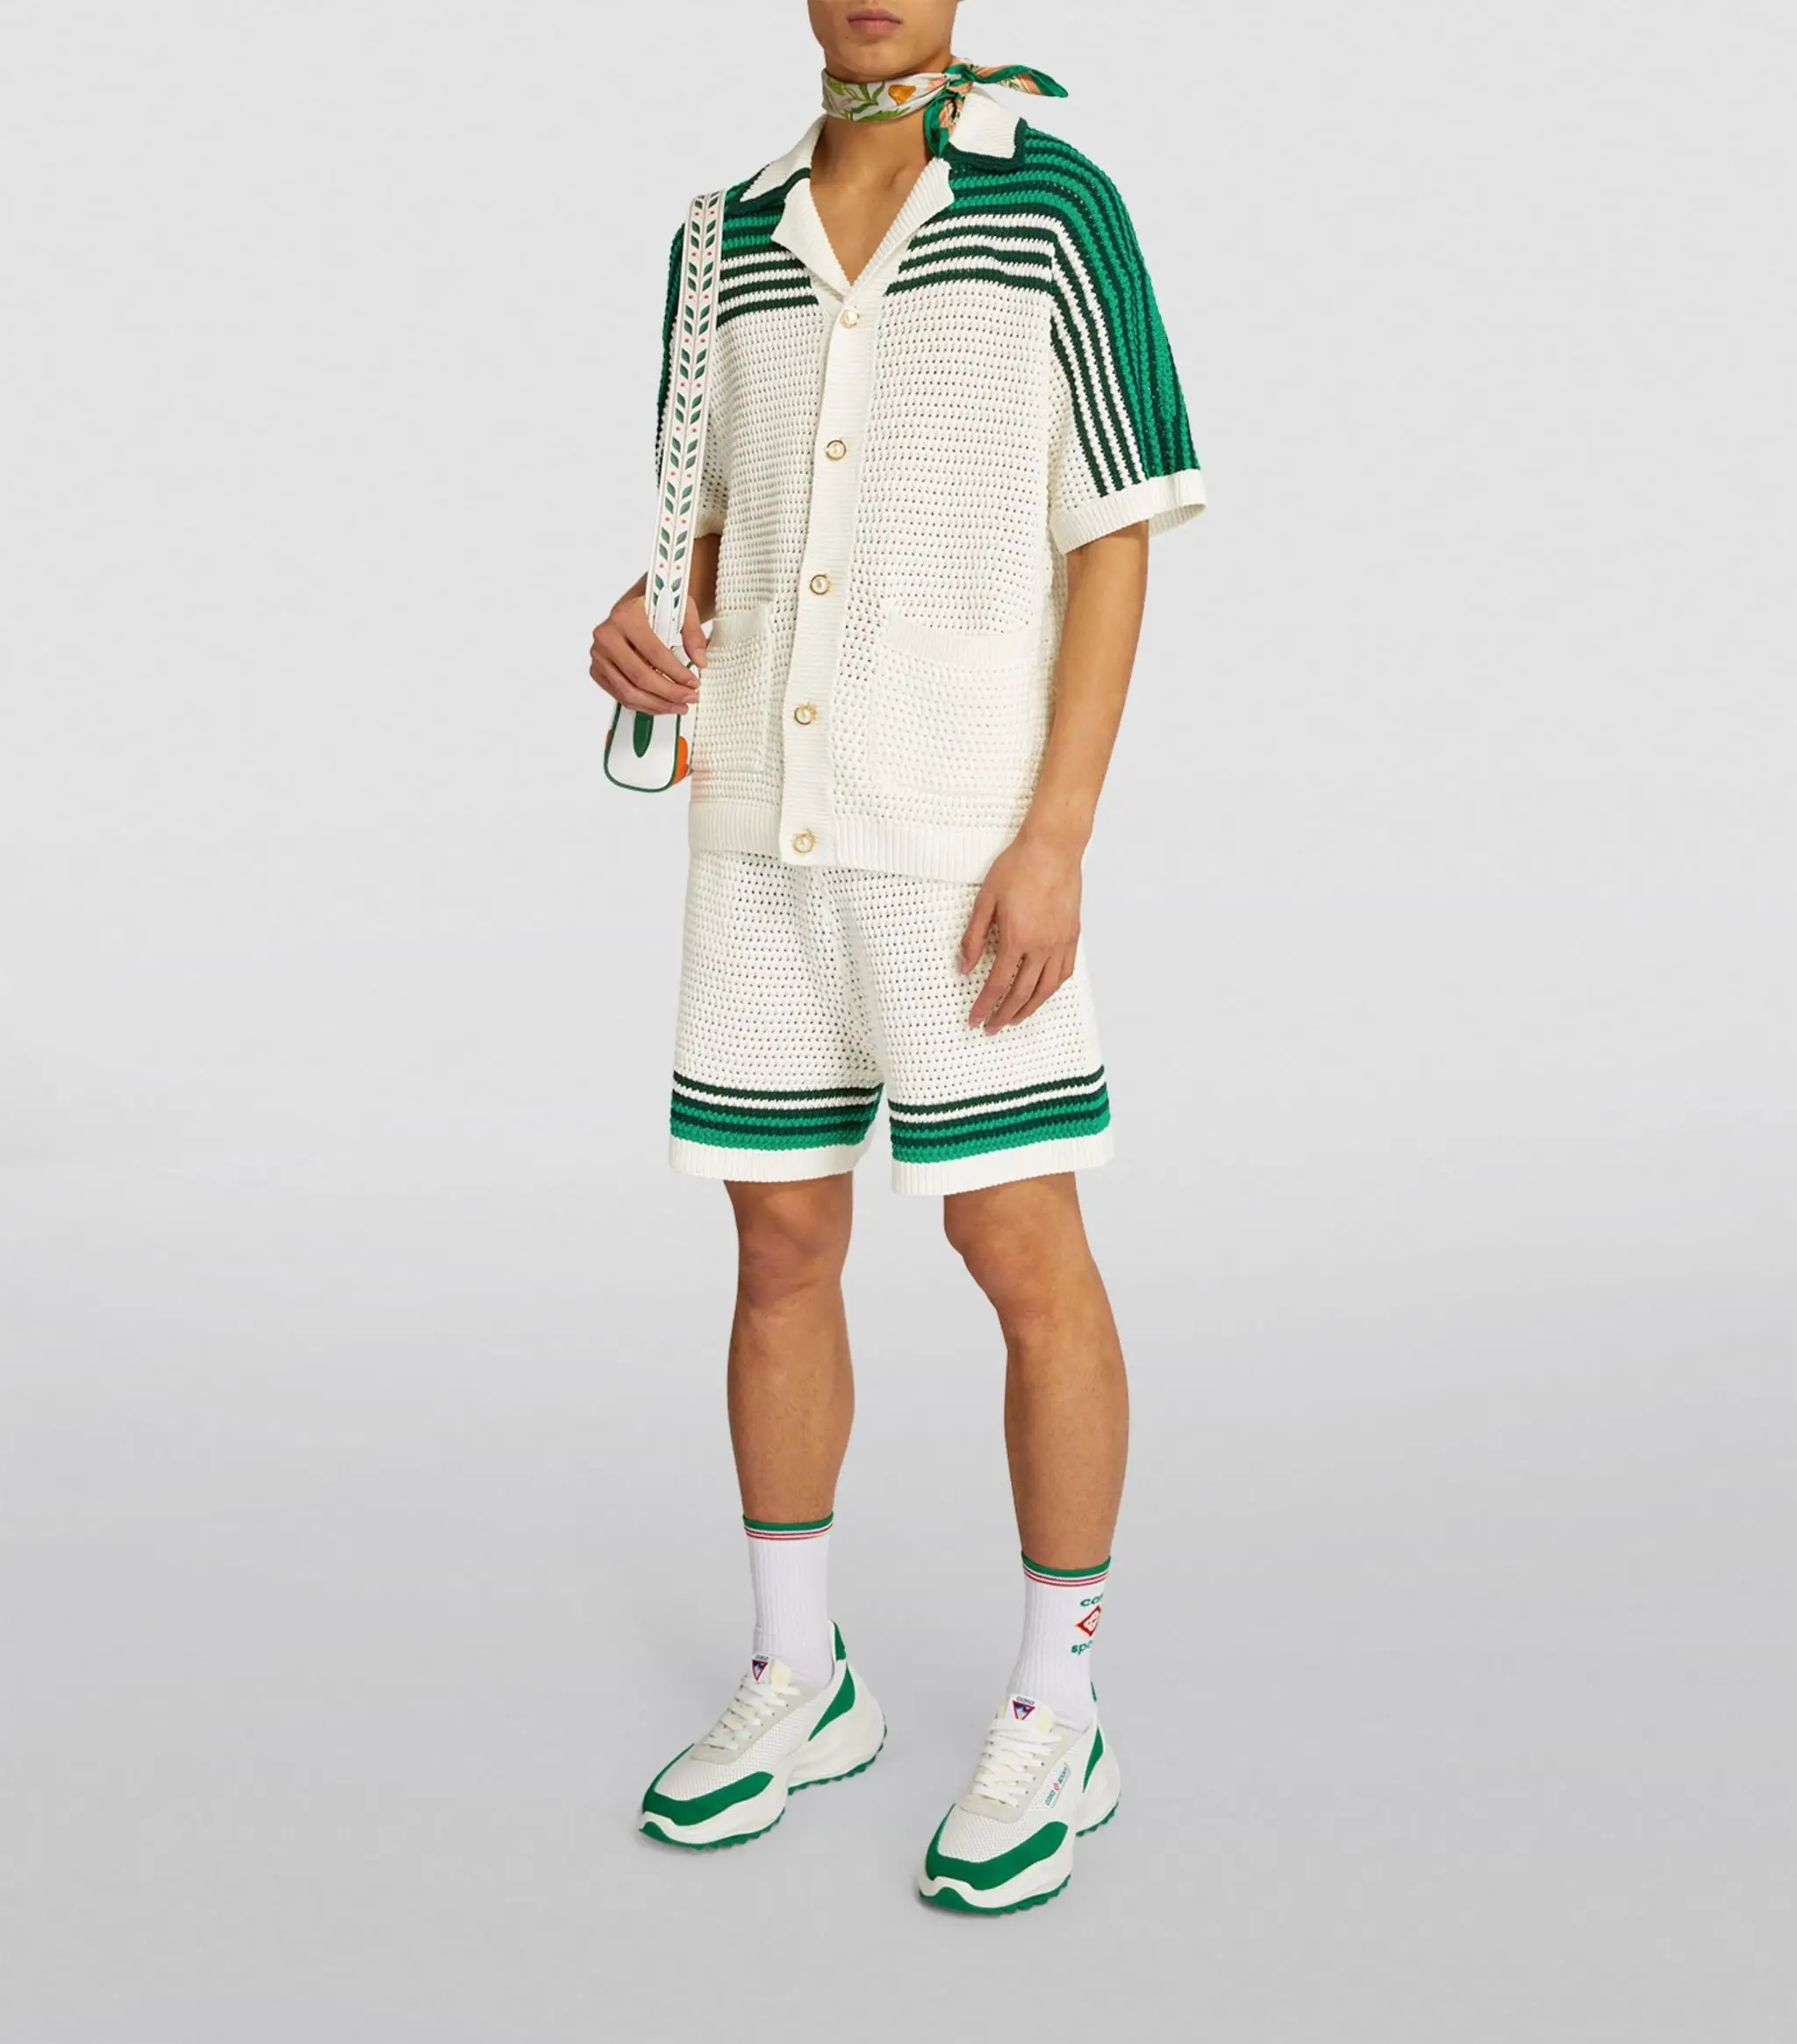 Özel moda erkek pamuk triko hırka yeşil ve beyaz cepler ile kısa kollu şort erkek örme gömlek